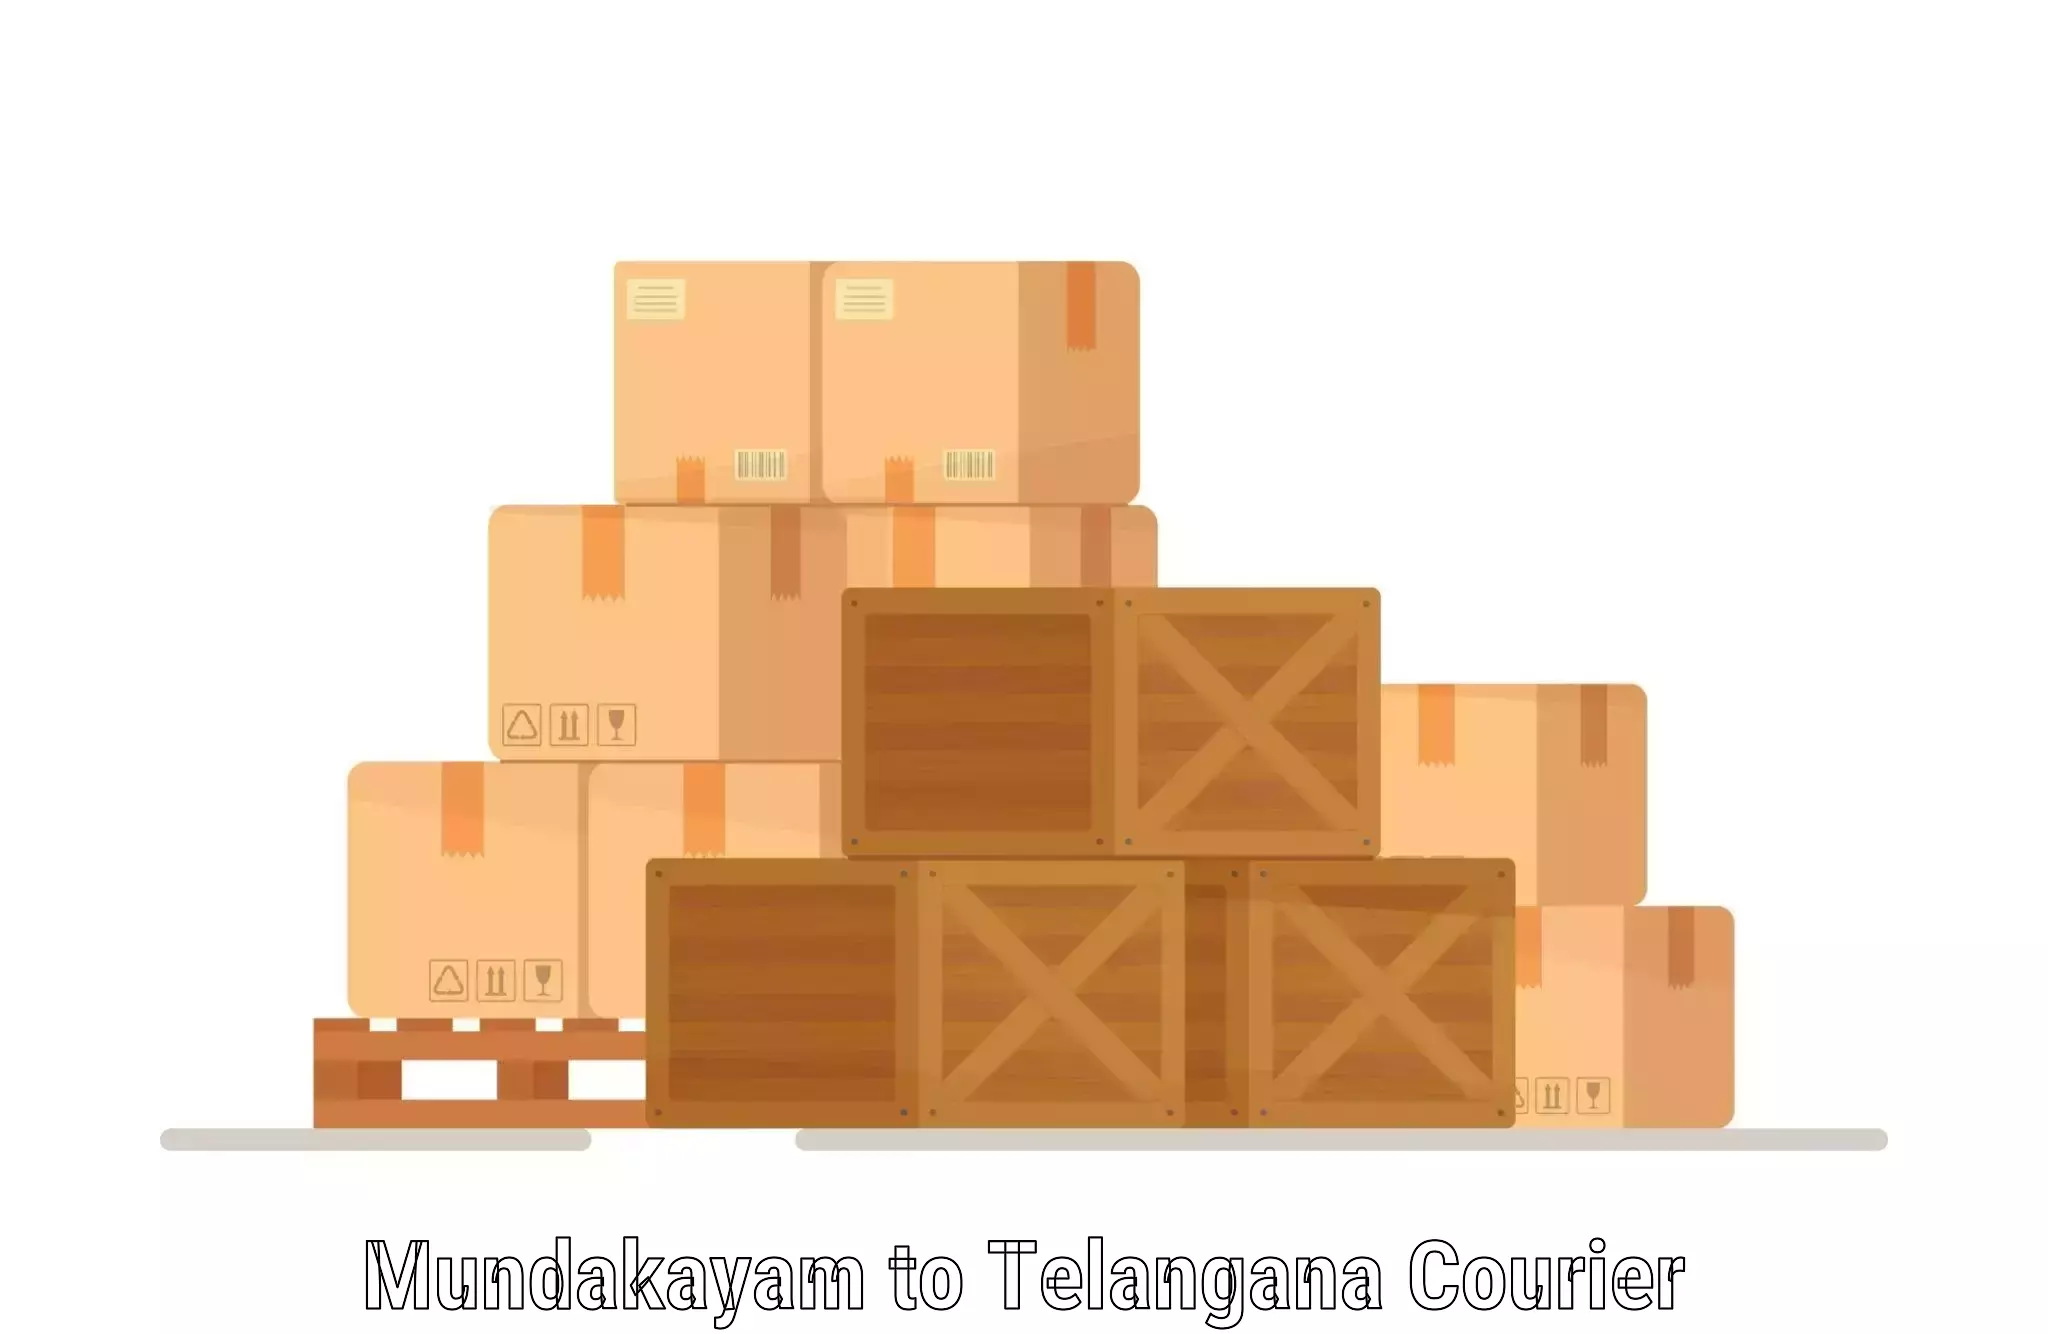 Cost-effective courier solutions Mundakayam to Choppadandi